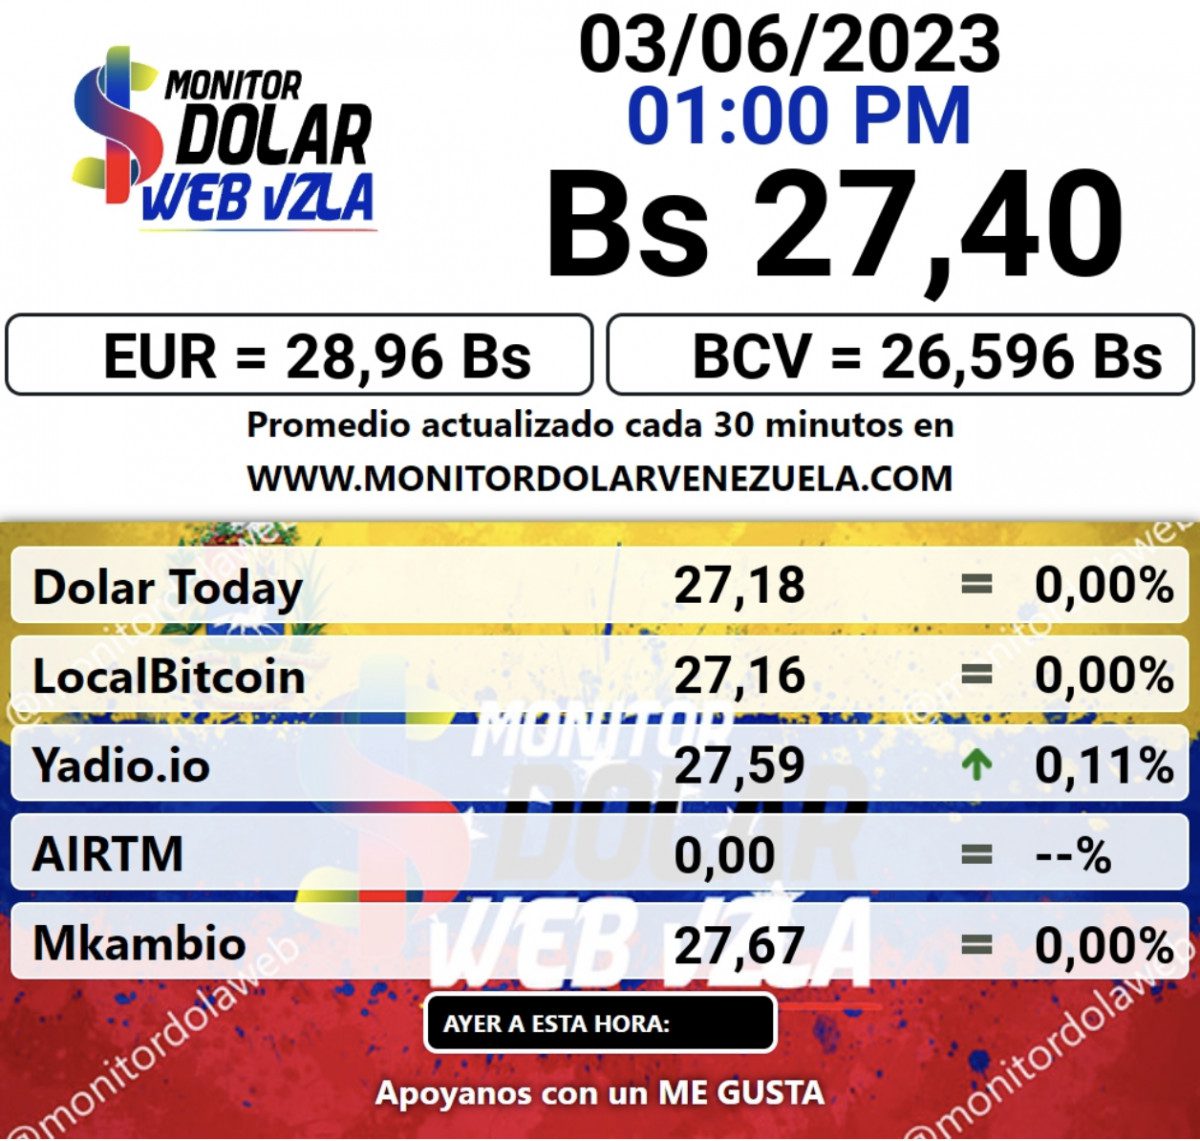 dolartoday en venezuela precio del dolar este sabado 3 de junio de 2023 laverdaddemonagas.com monitor2